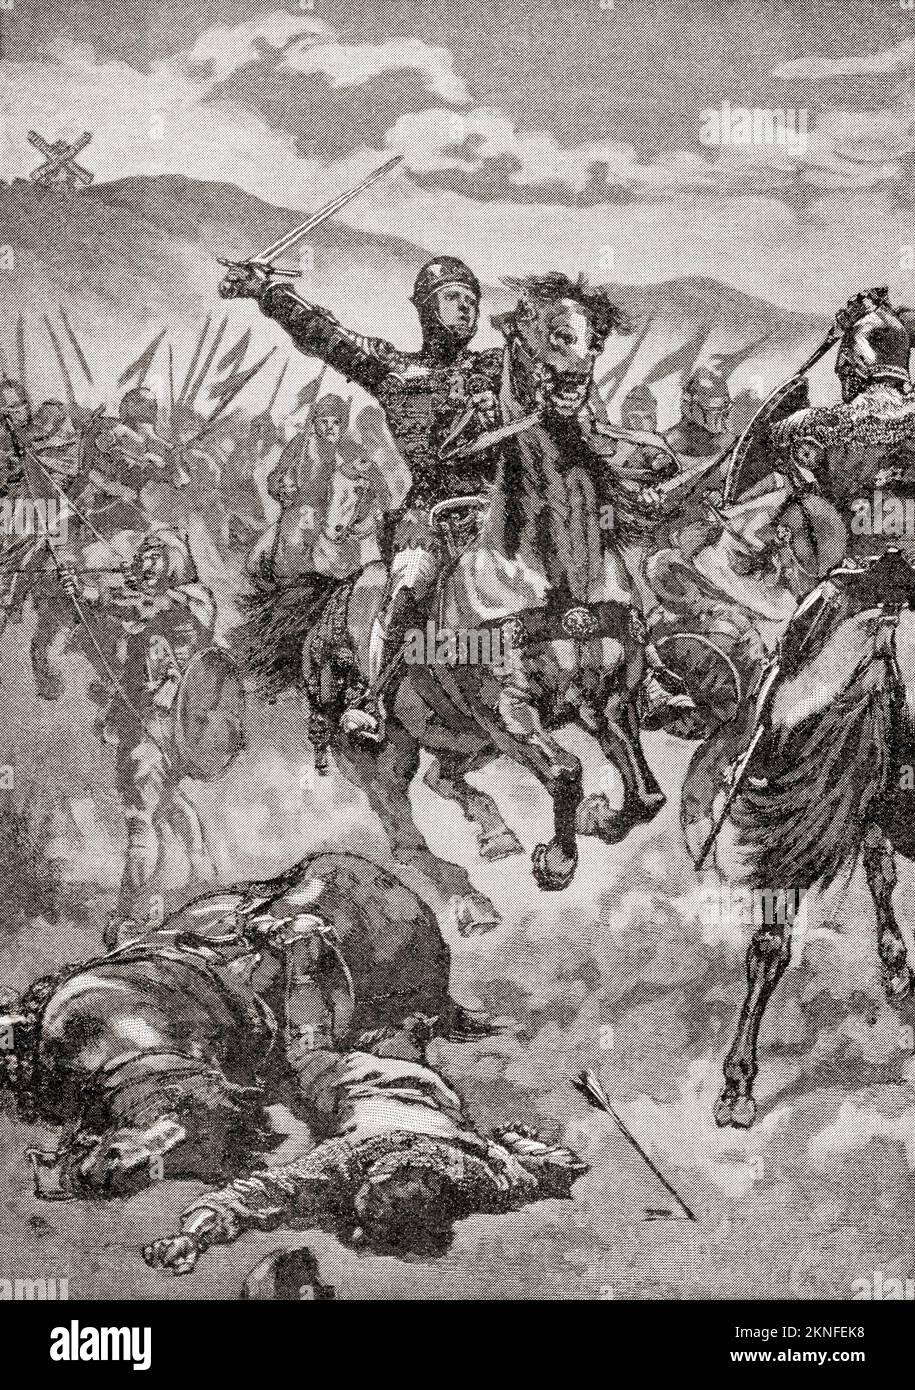 El Príncipe Negro en la Batalla de Crécy, 26 de agosto de 1346. Eduardo de Woodstock, también conocido como el Príncipe Negro, 1330 – 1376. Hijo mayor del rey Eduardo III de Inglaterra. De Historia de Inglaterra, publicado en 1907 Foto de stock